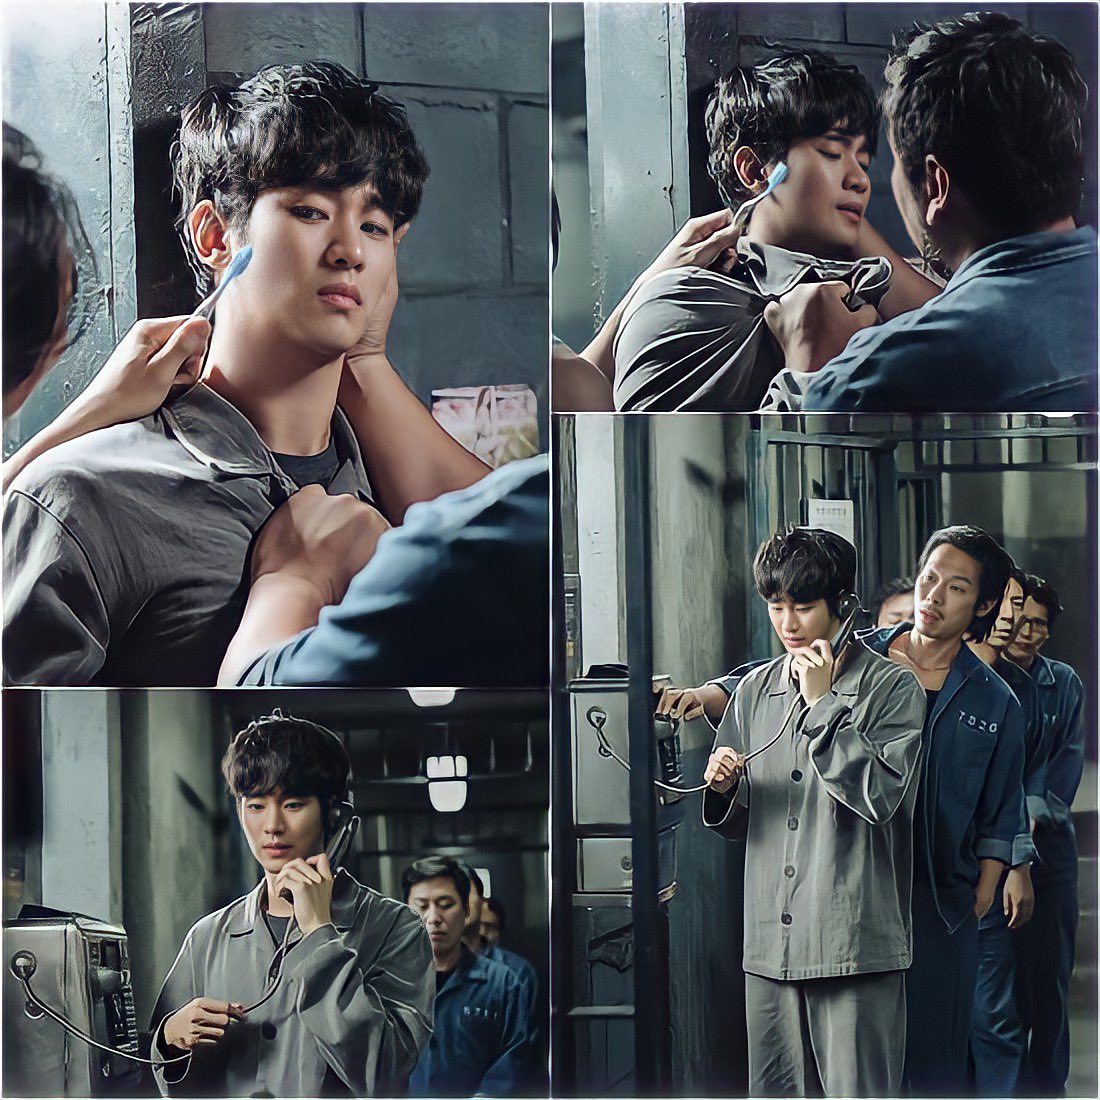 Kim Soo Hyun es amenazado en prisión mientras Cha Seung Won intenta comunicarse con él en